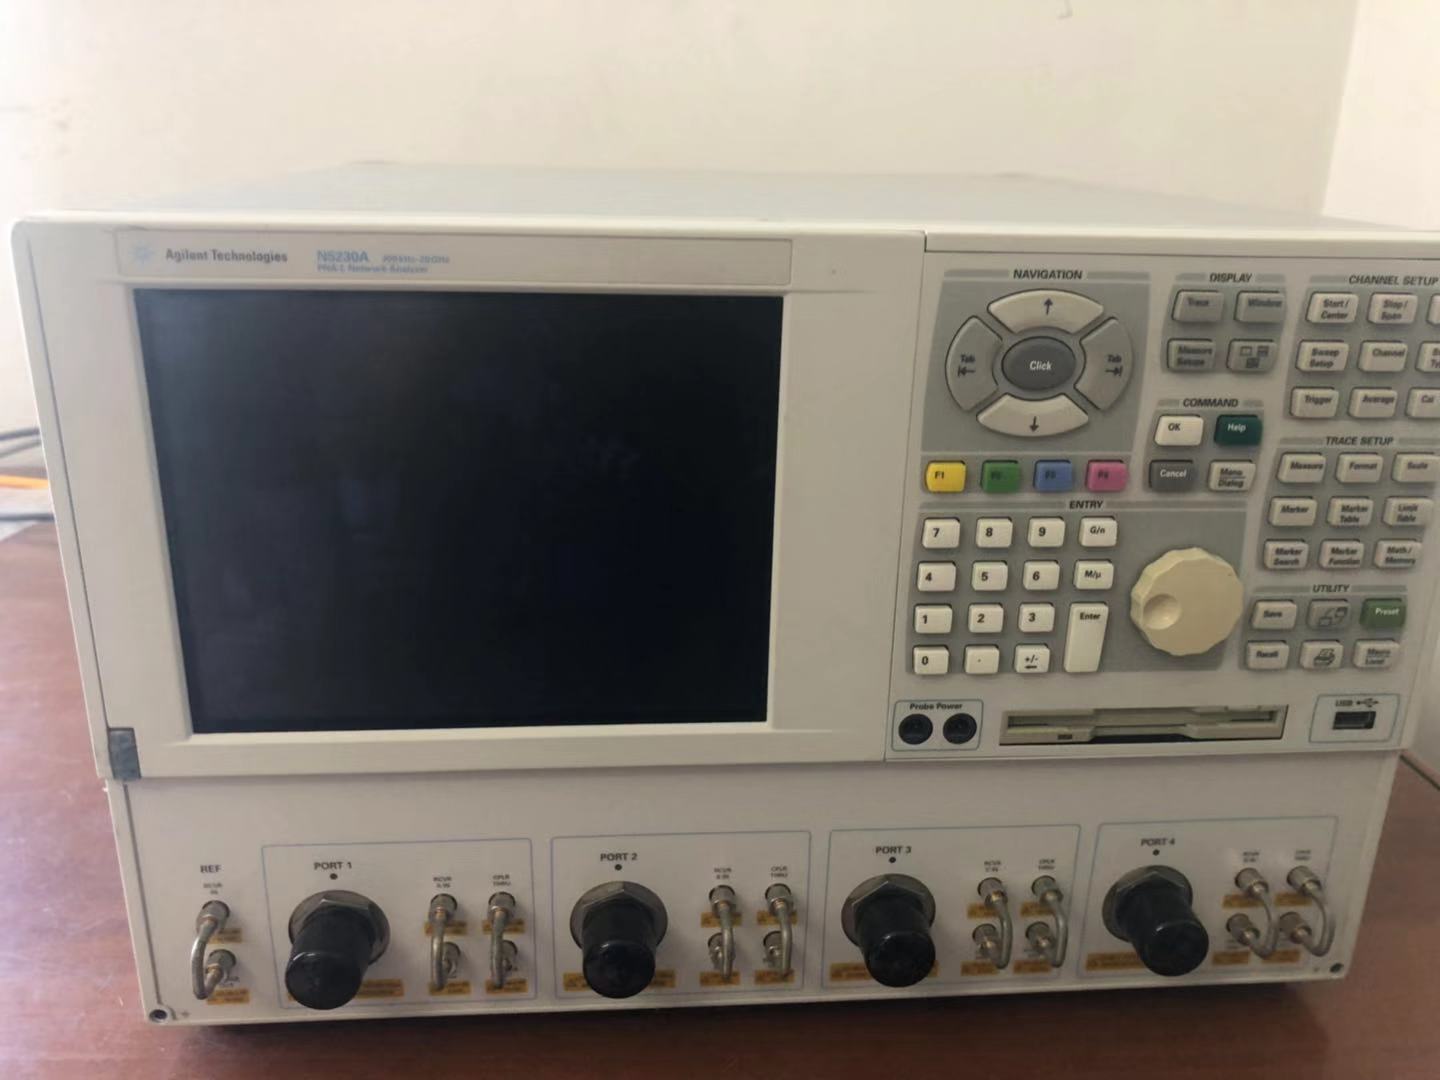 出售E8362C网络分析仪